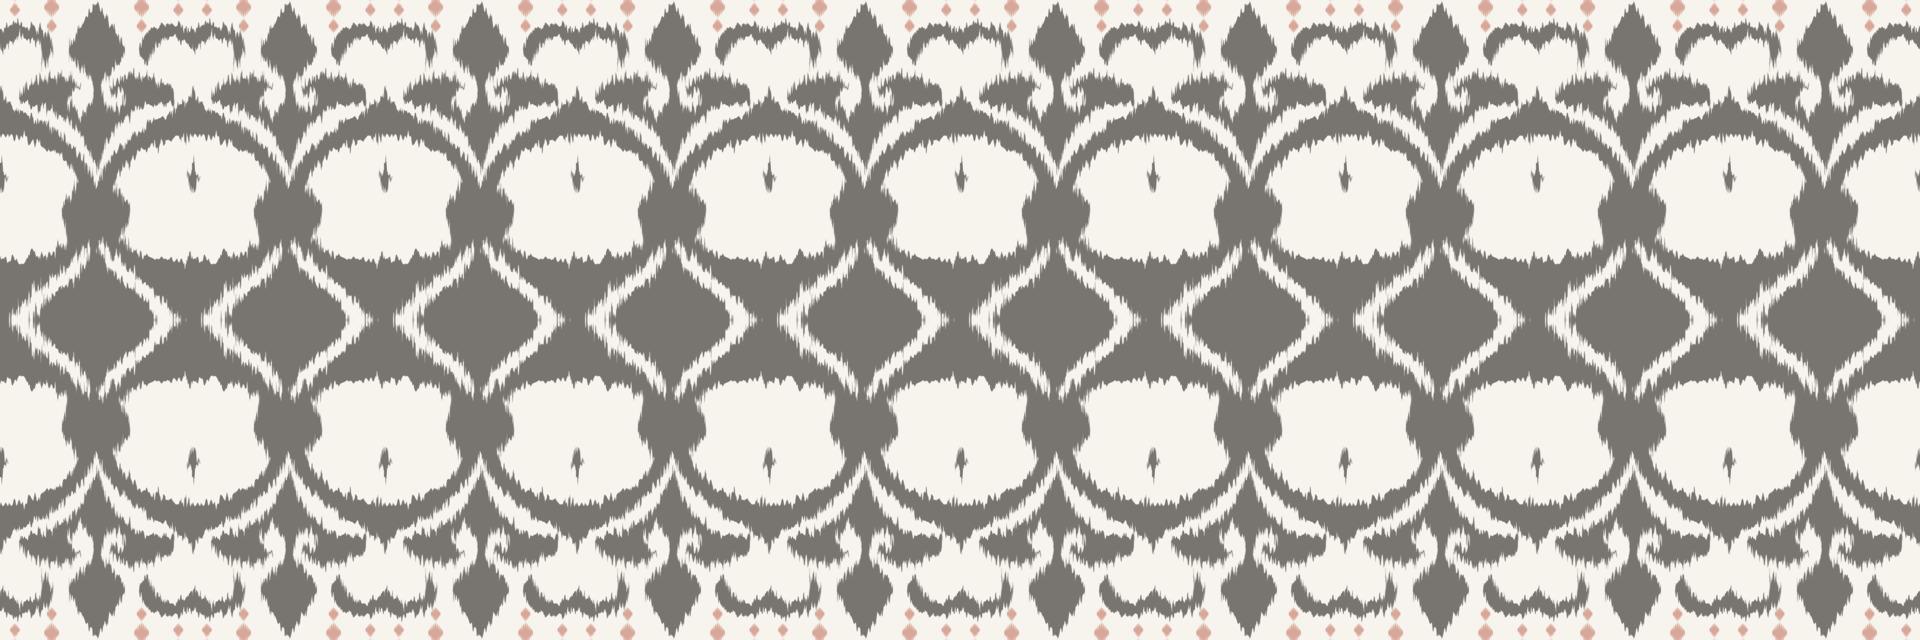 modèle sans couture aztèque tribal frontière ikat. ethnique géométrique ikkat batik numérique vecteur conception textile pour impressions tissu sari mughal brosse symbole andains texture kurti kurtis kurtas